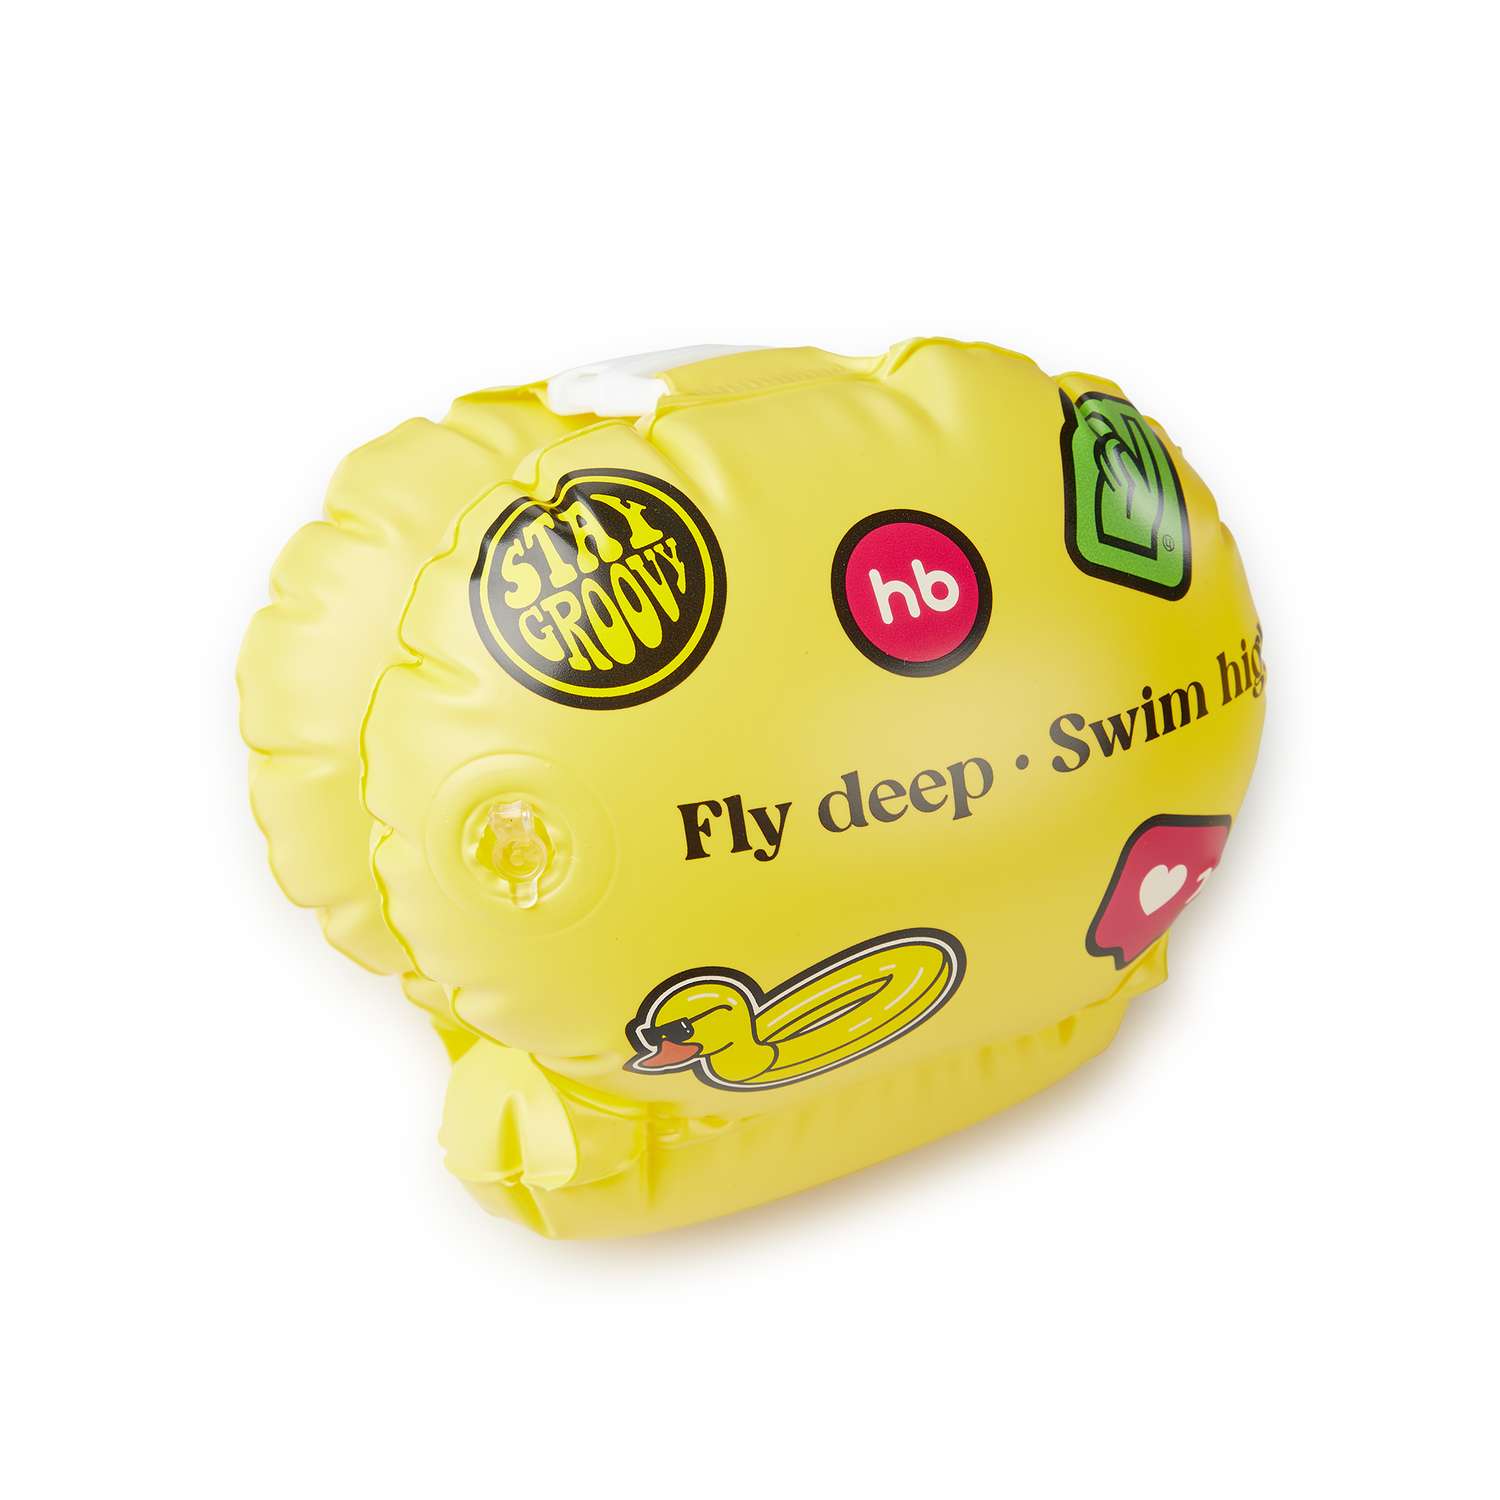 Нарукавники надувные Happy Baby для плавания - фото 7